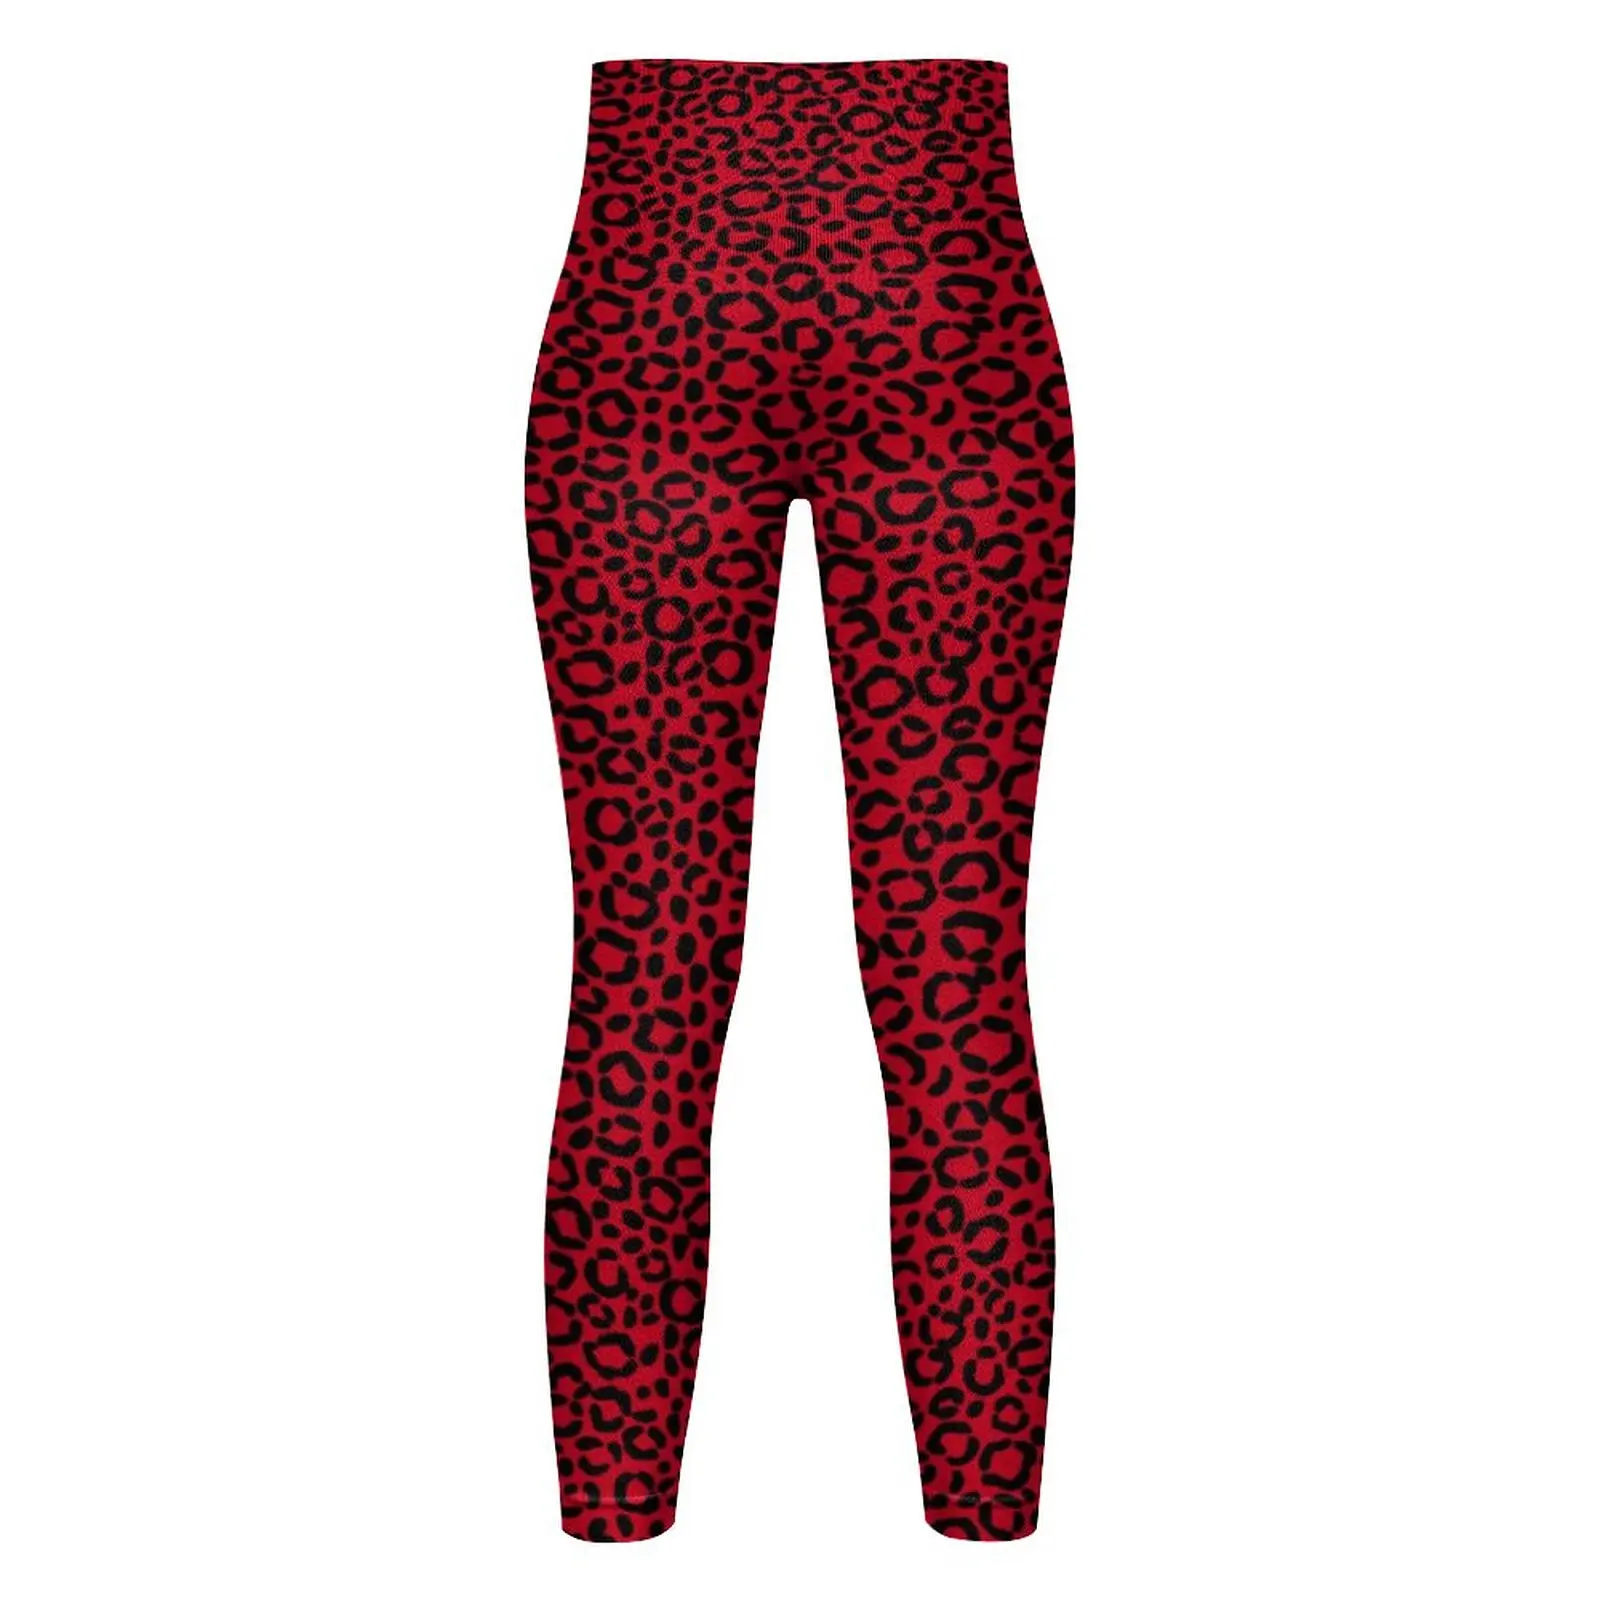 Vermelho E Preto Leopardo Perfeita Perneiras De Pele De Animal Print Ginásio Calças De Yoga Push-Up Elástico Meia-Calça Esporte Feminino Engraçado Leggins Imagem 4